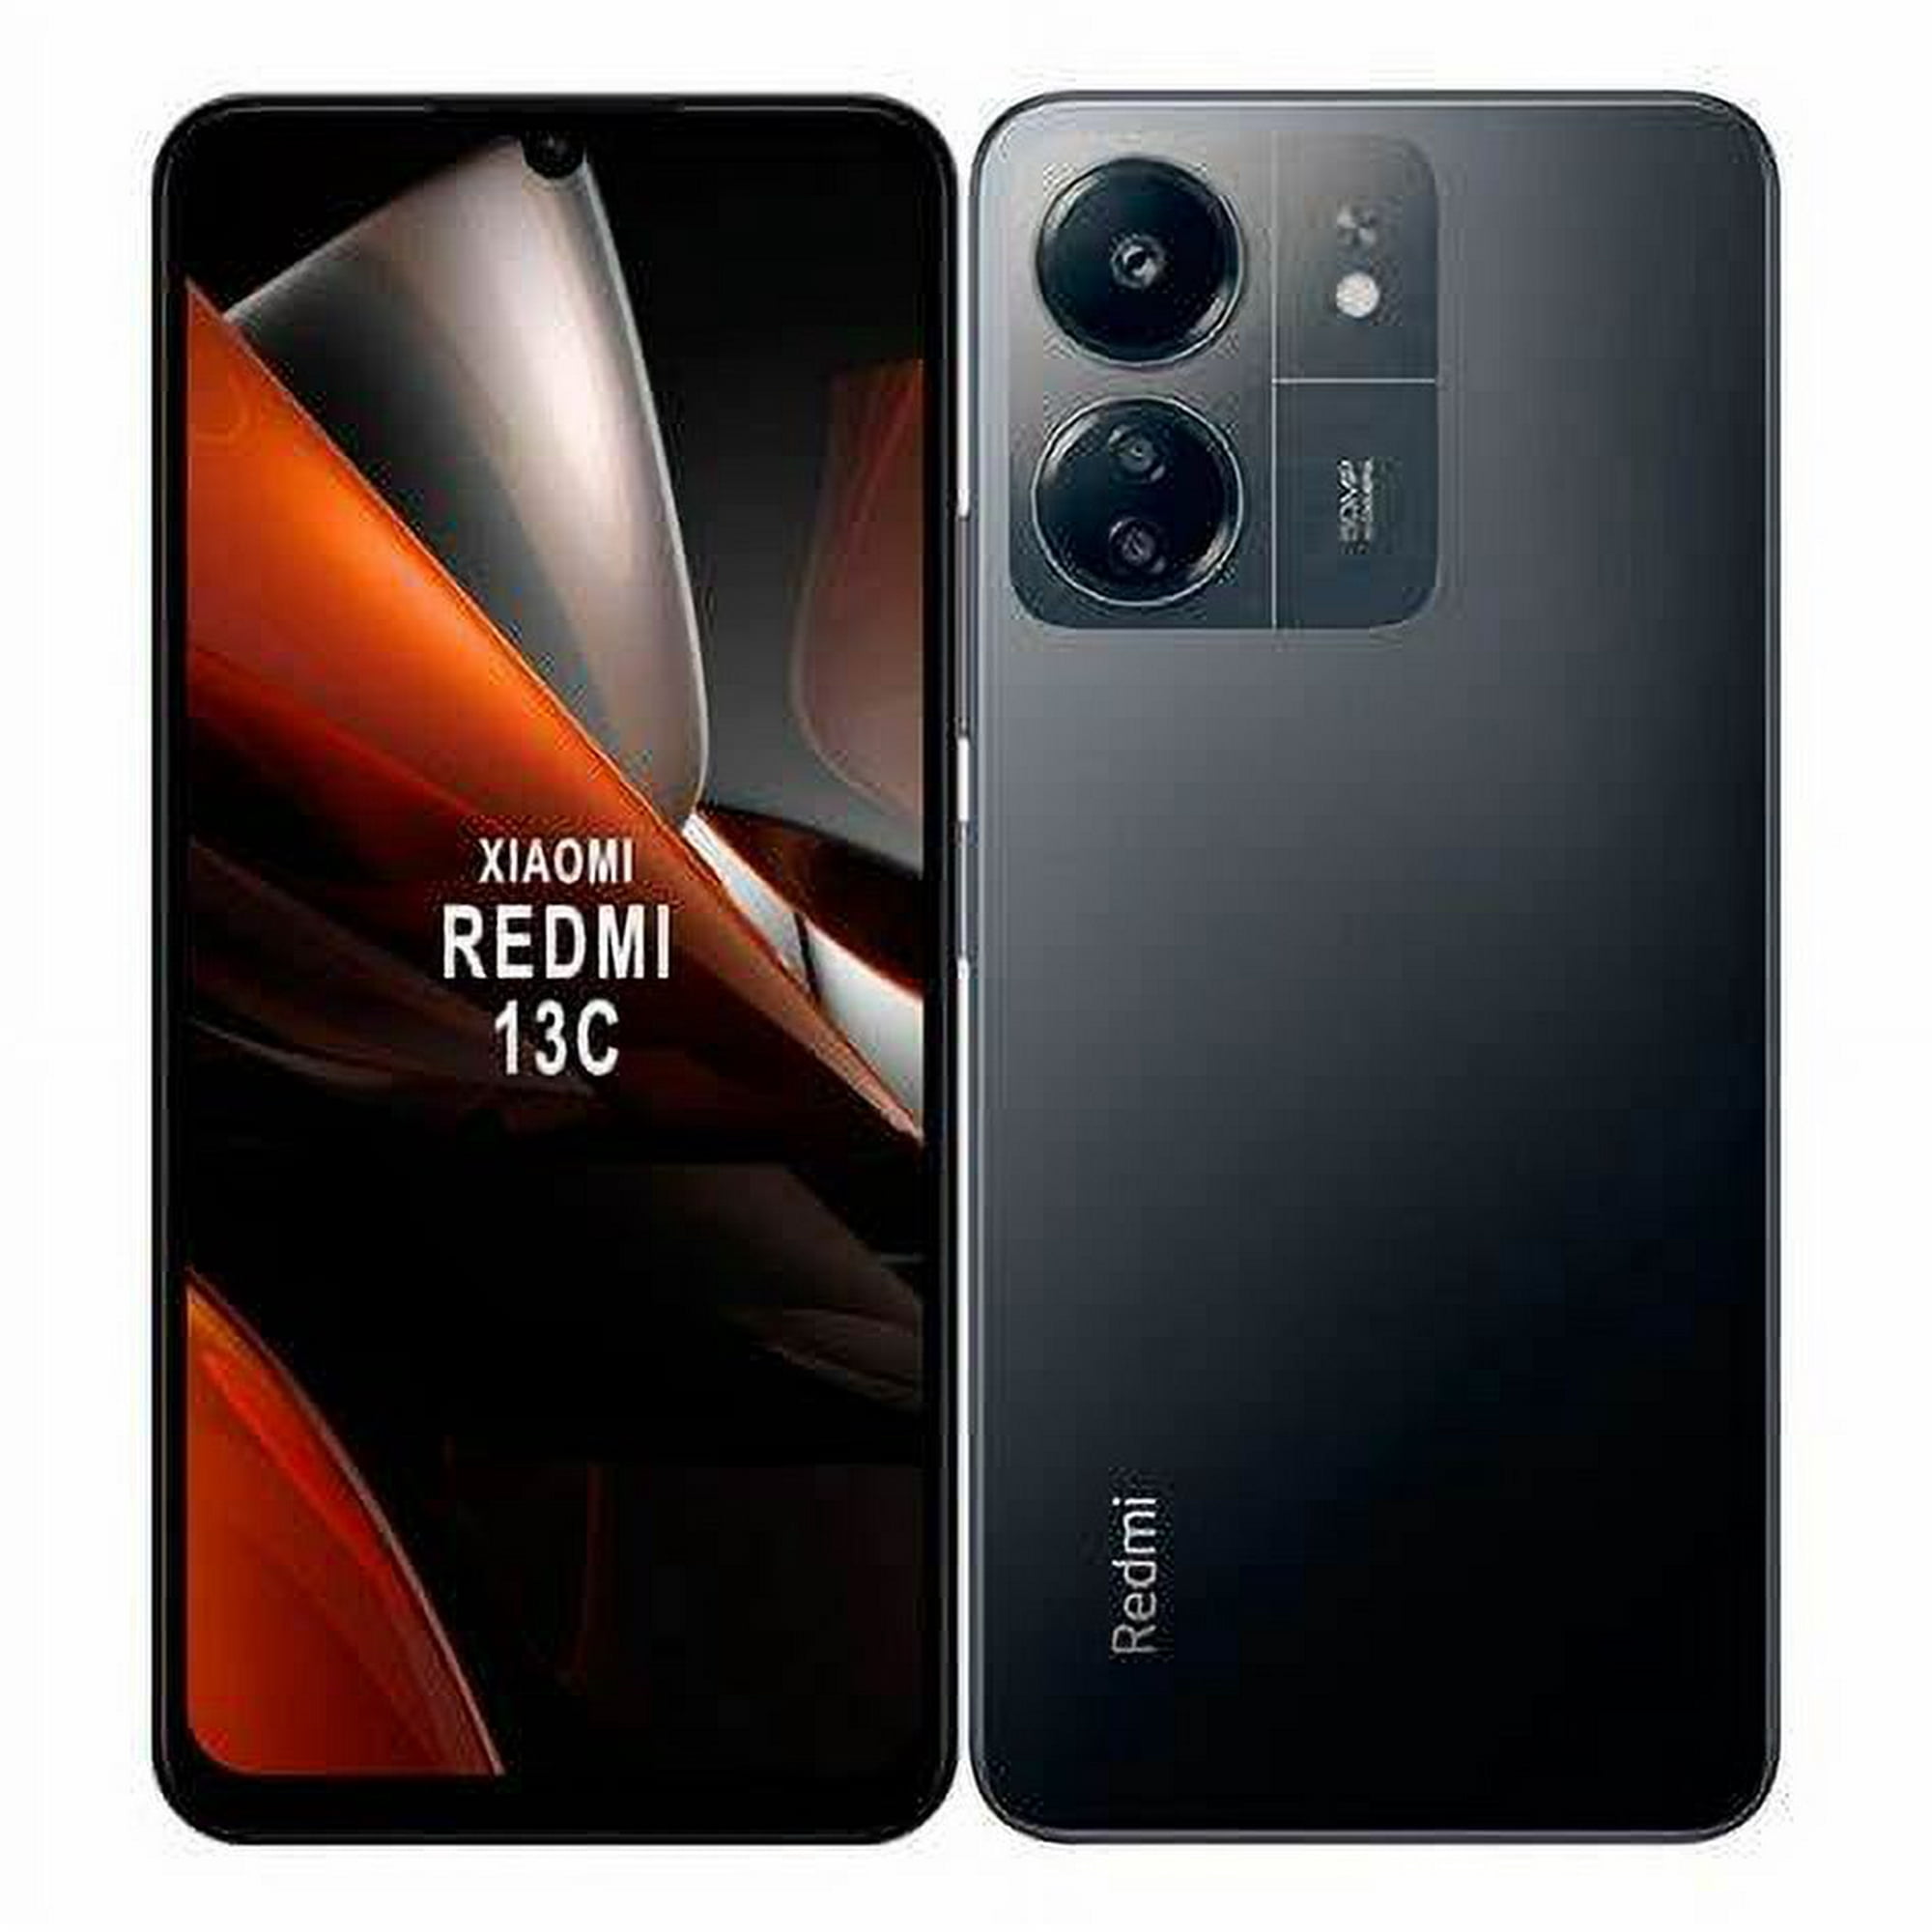 Smartphone Redmi 13c 8gb256gb Dual Sim Negro Bodega Aurrera En Línea 8322